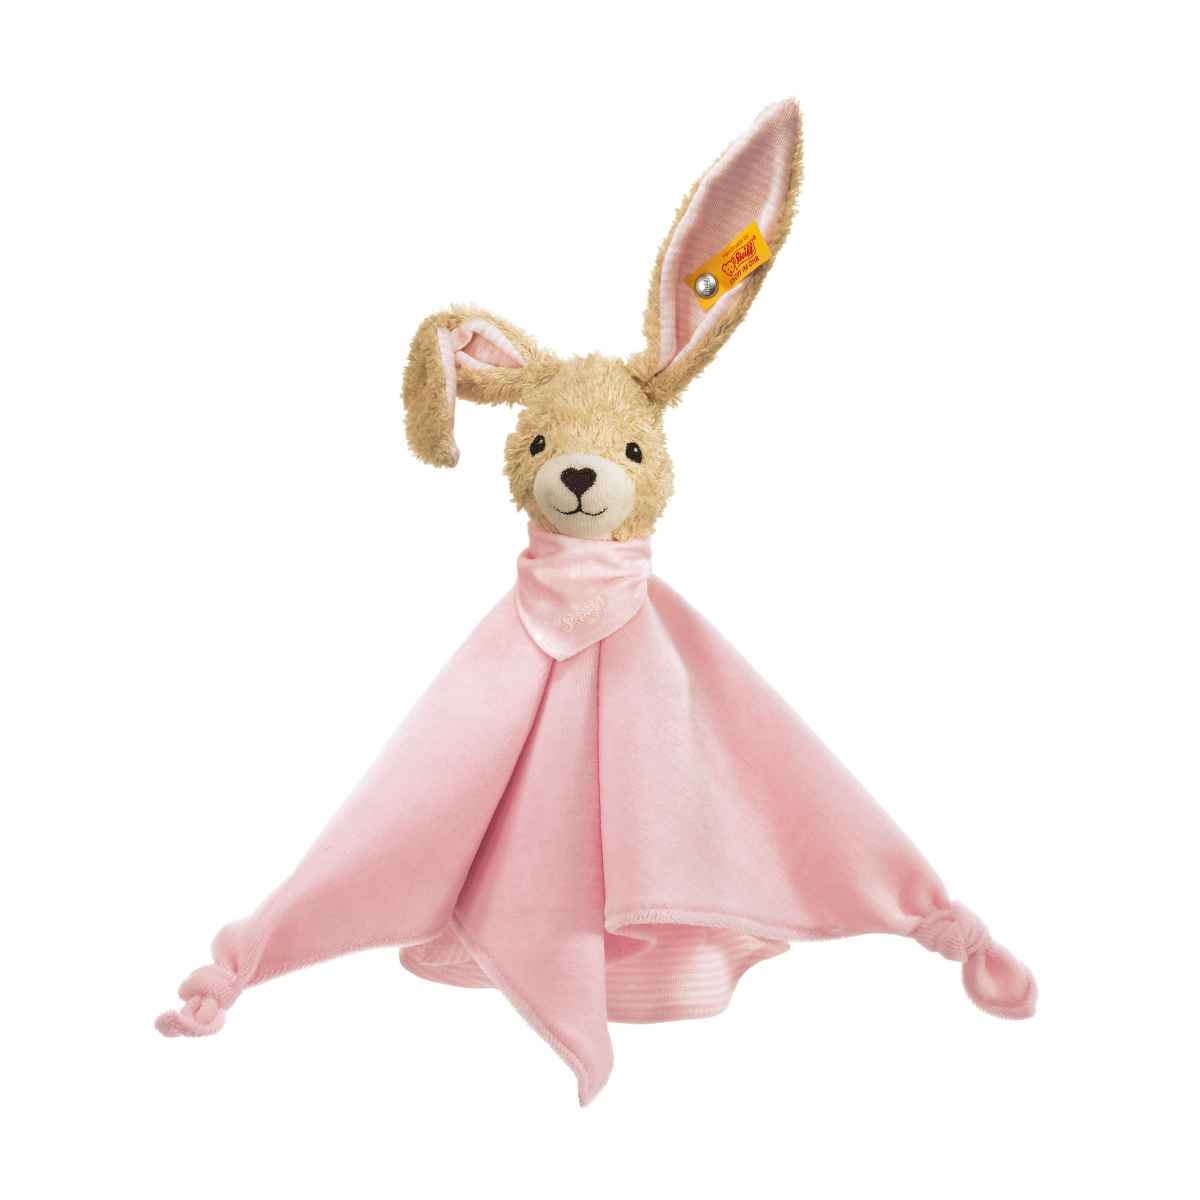 Комфортер для новорожденных Steiff Hoppel Rabbit pink Штайф Кролик Хоппель, розовый, 28 см комфортер kaloo игрушка кролик 30 см